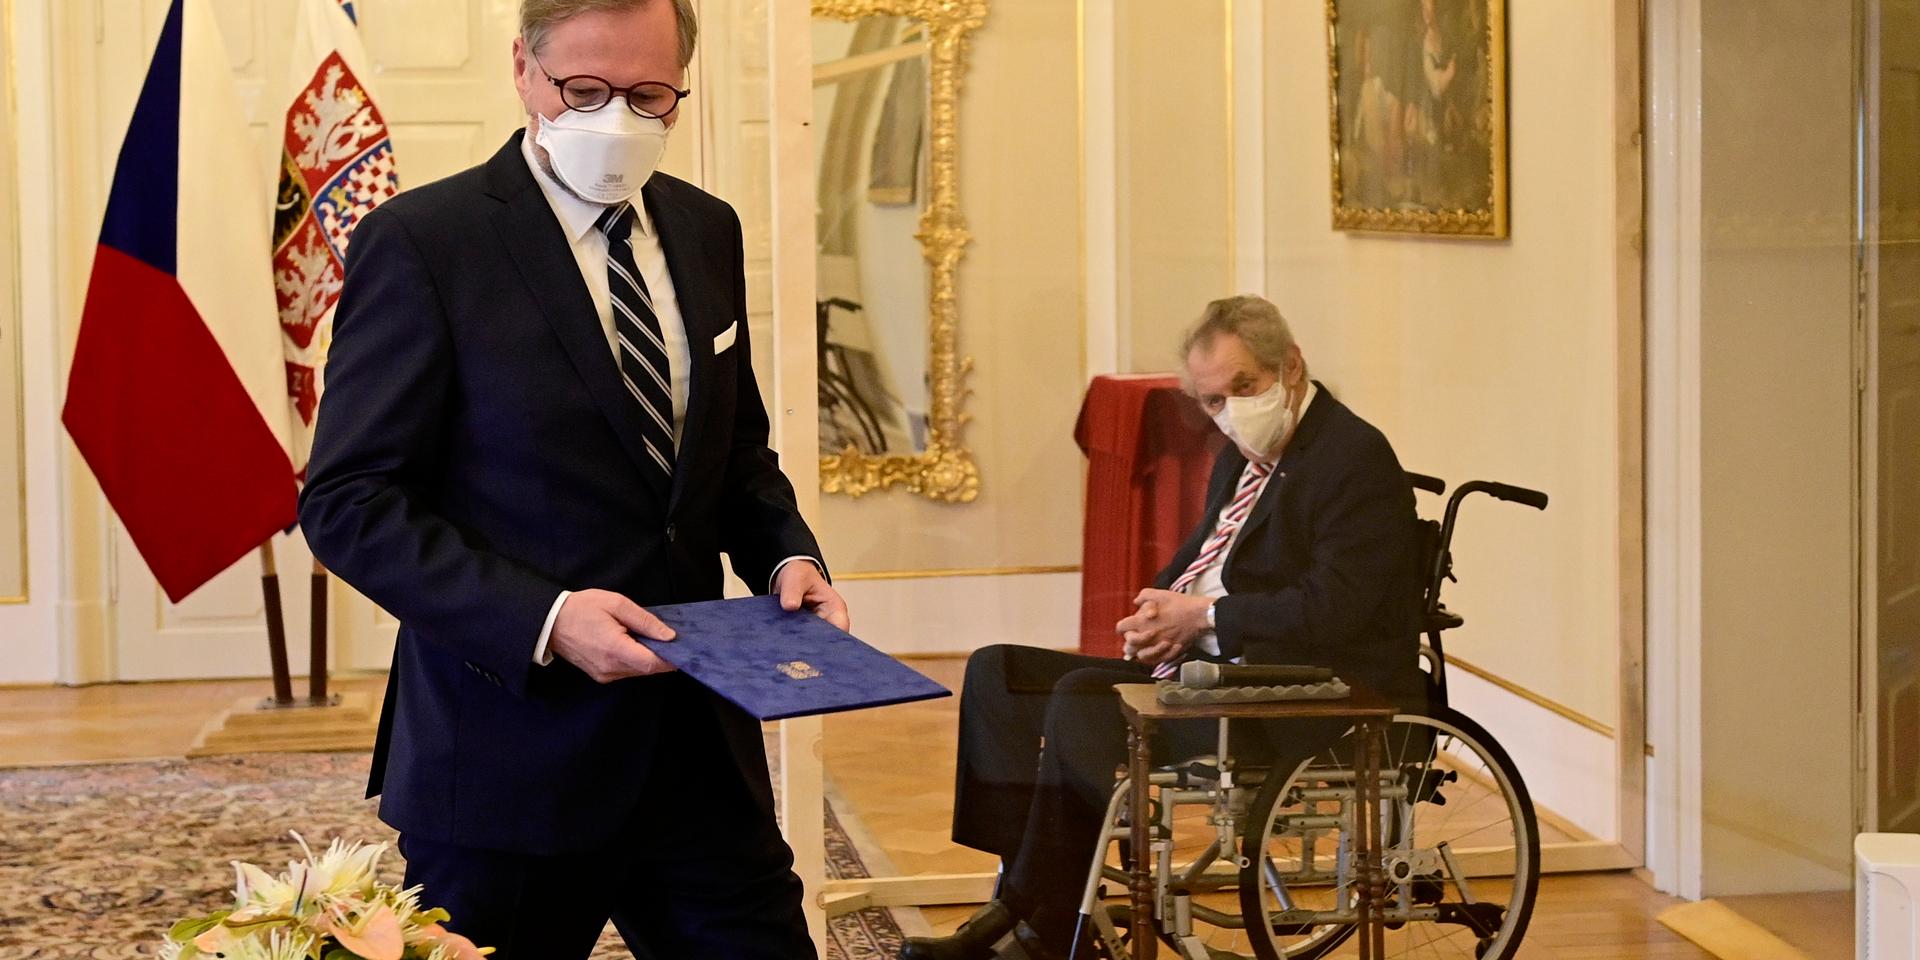 President Milos Zeman satt i rullstol bakom plexiglas vid ceremonin.